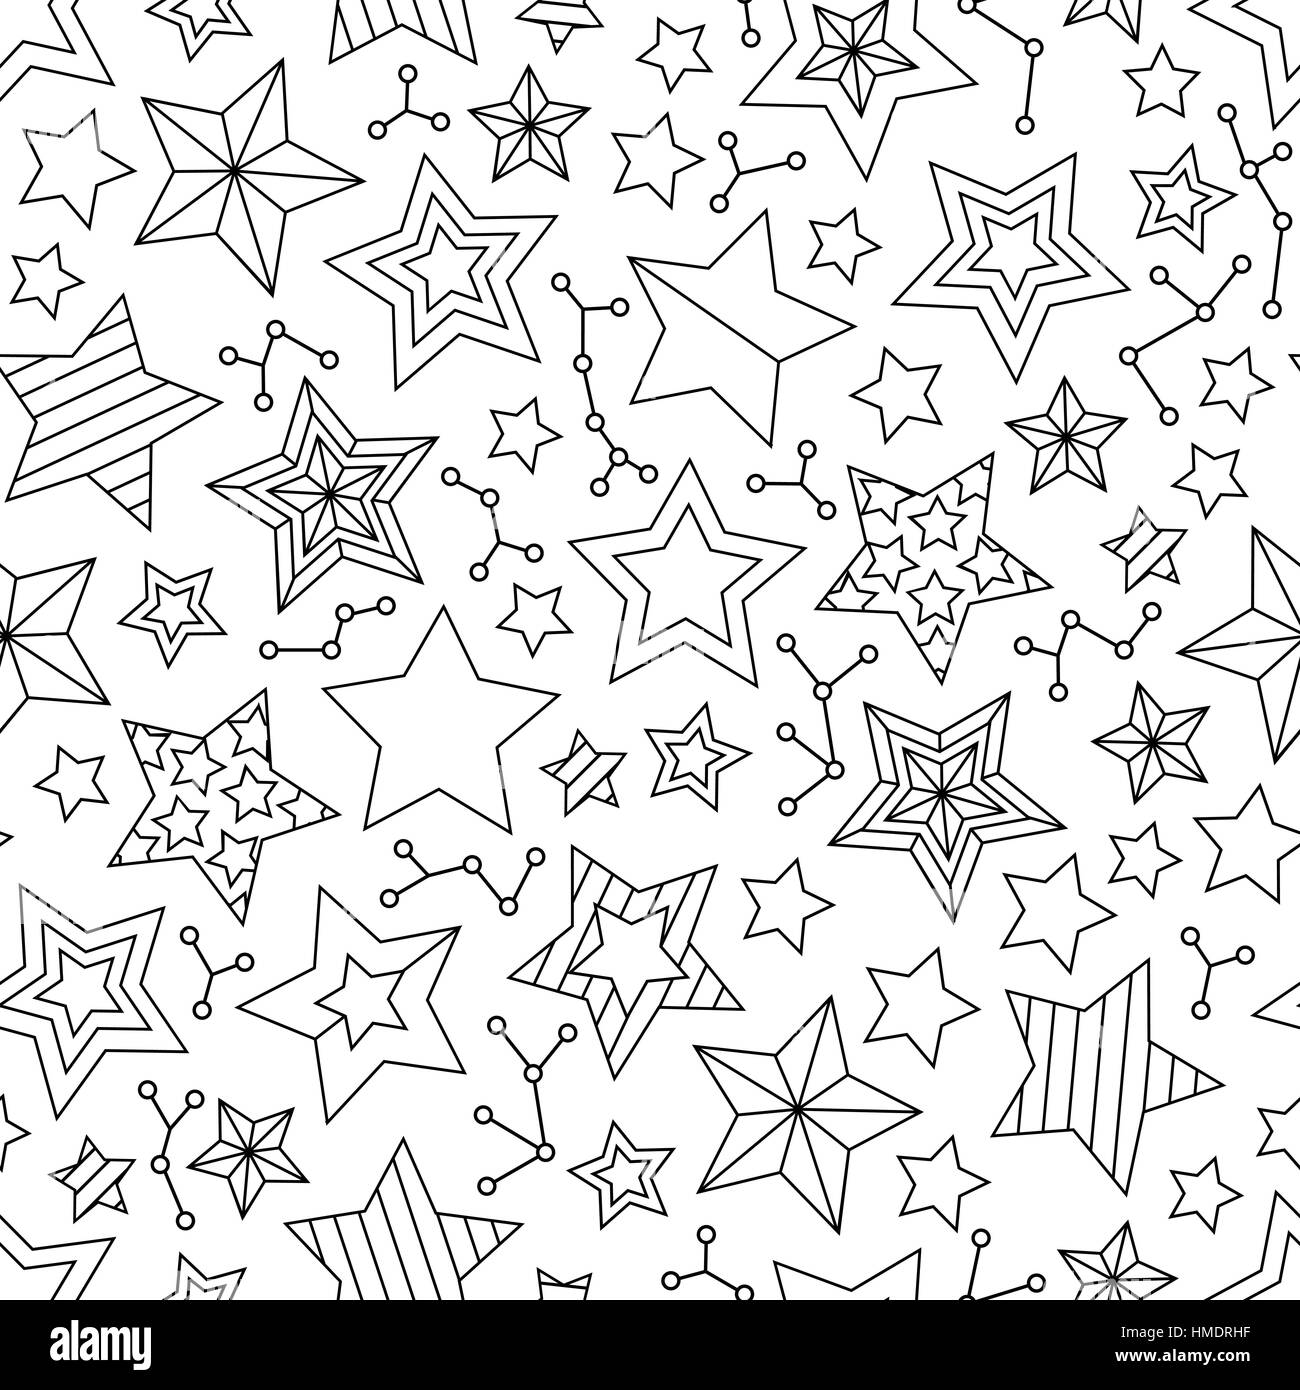 Nahtlose Muster mit Sternen Umriss. Malvorlagen Buch für Erwachsene und ältere Kinder. Stock Vektor